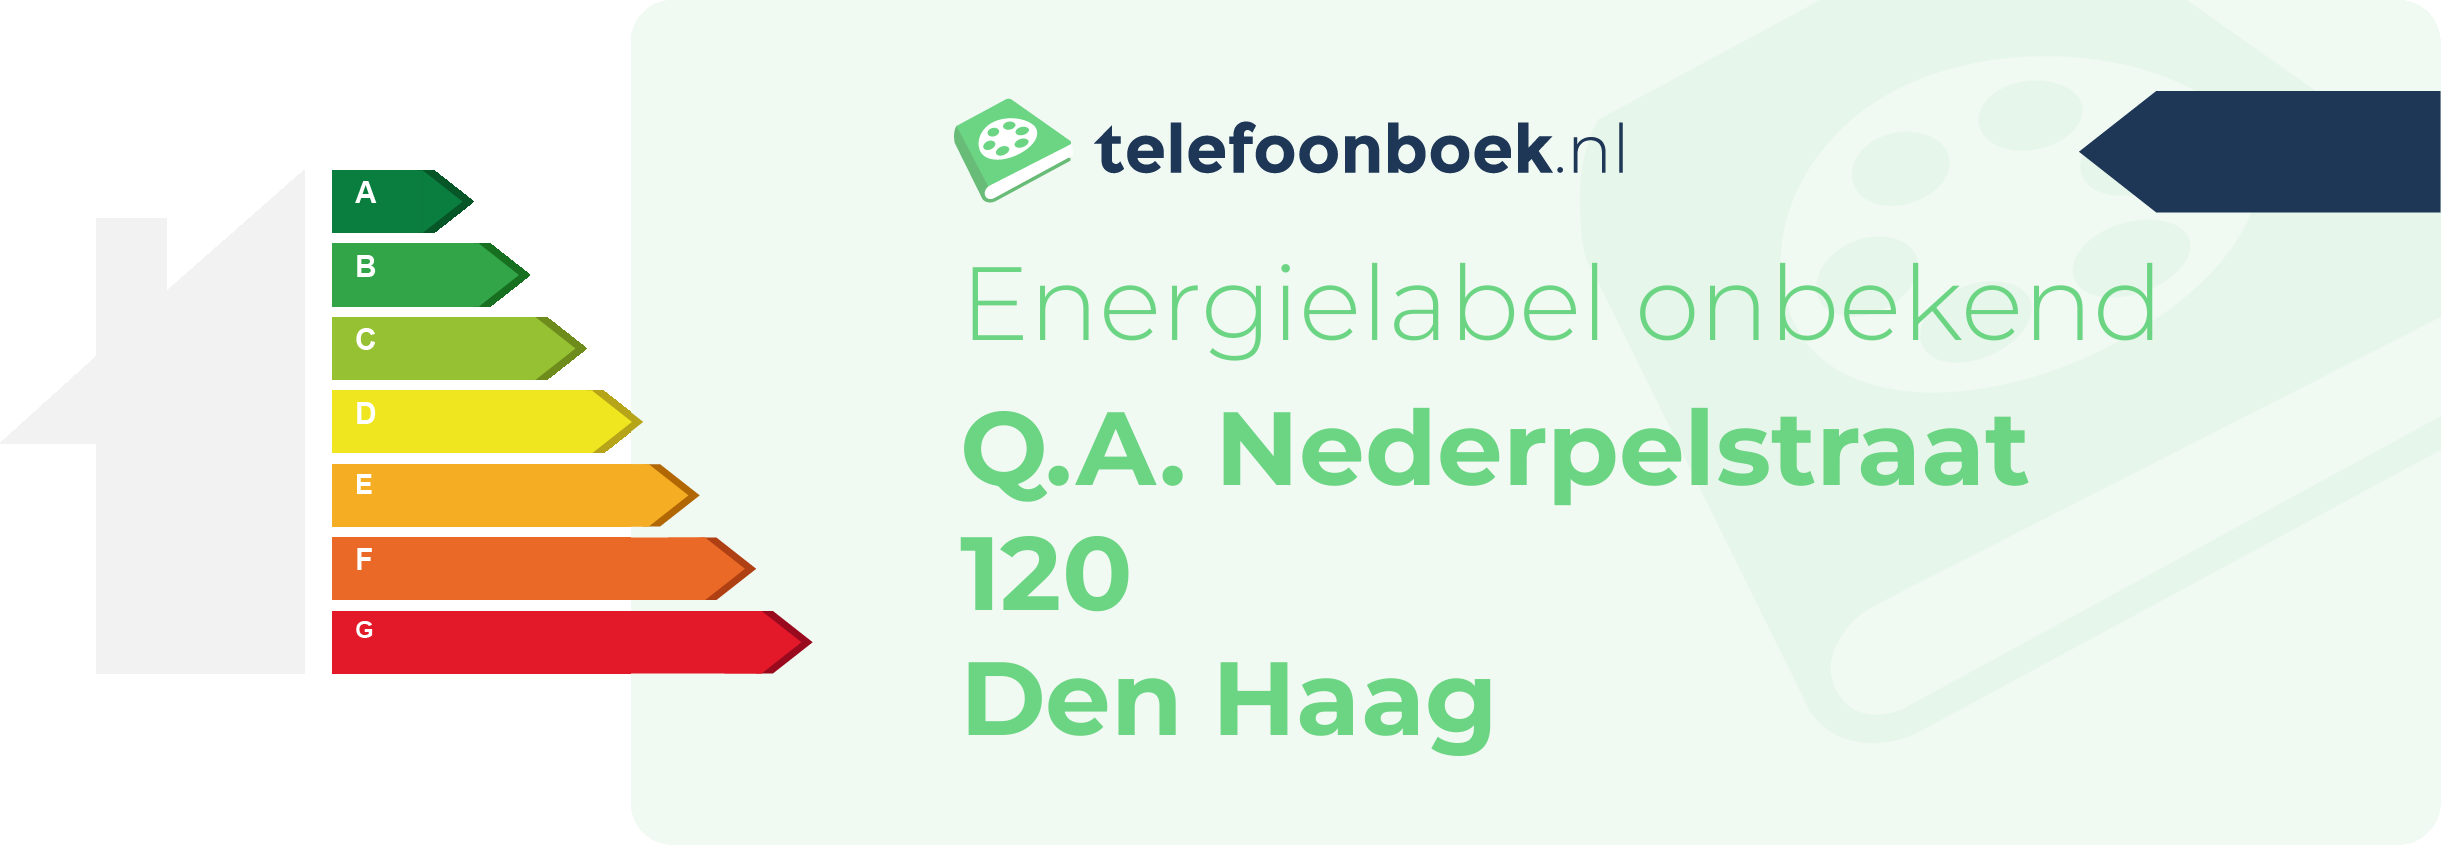 Energielabel Q.A. Nederpelstraat 120 Den Haag